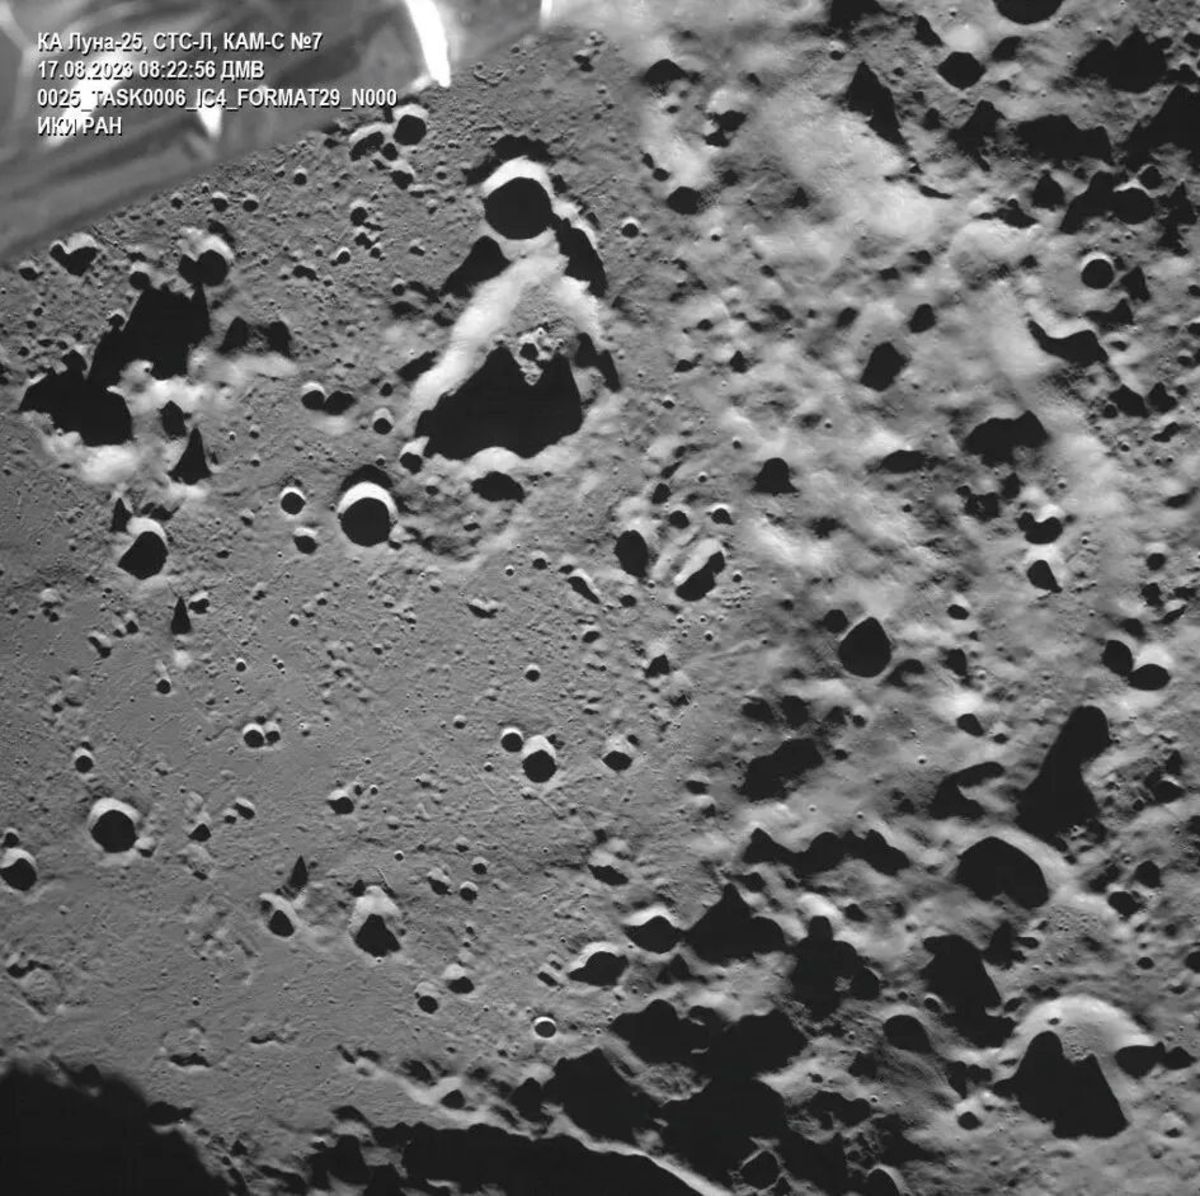 تصویر لونا ۲۵ از دهانه زیمان در سمت پنهان ماه